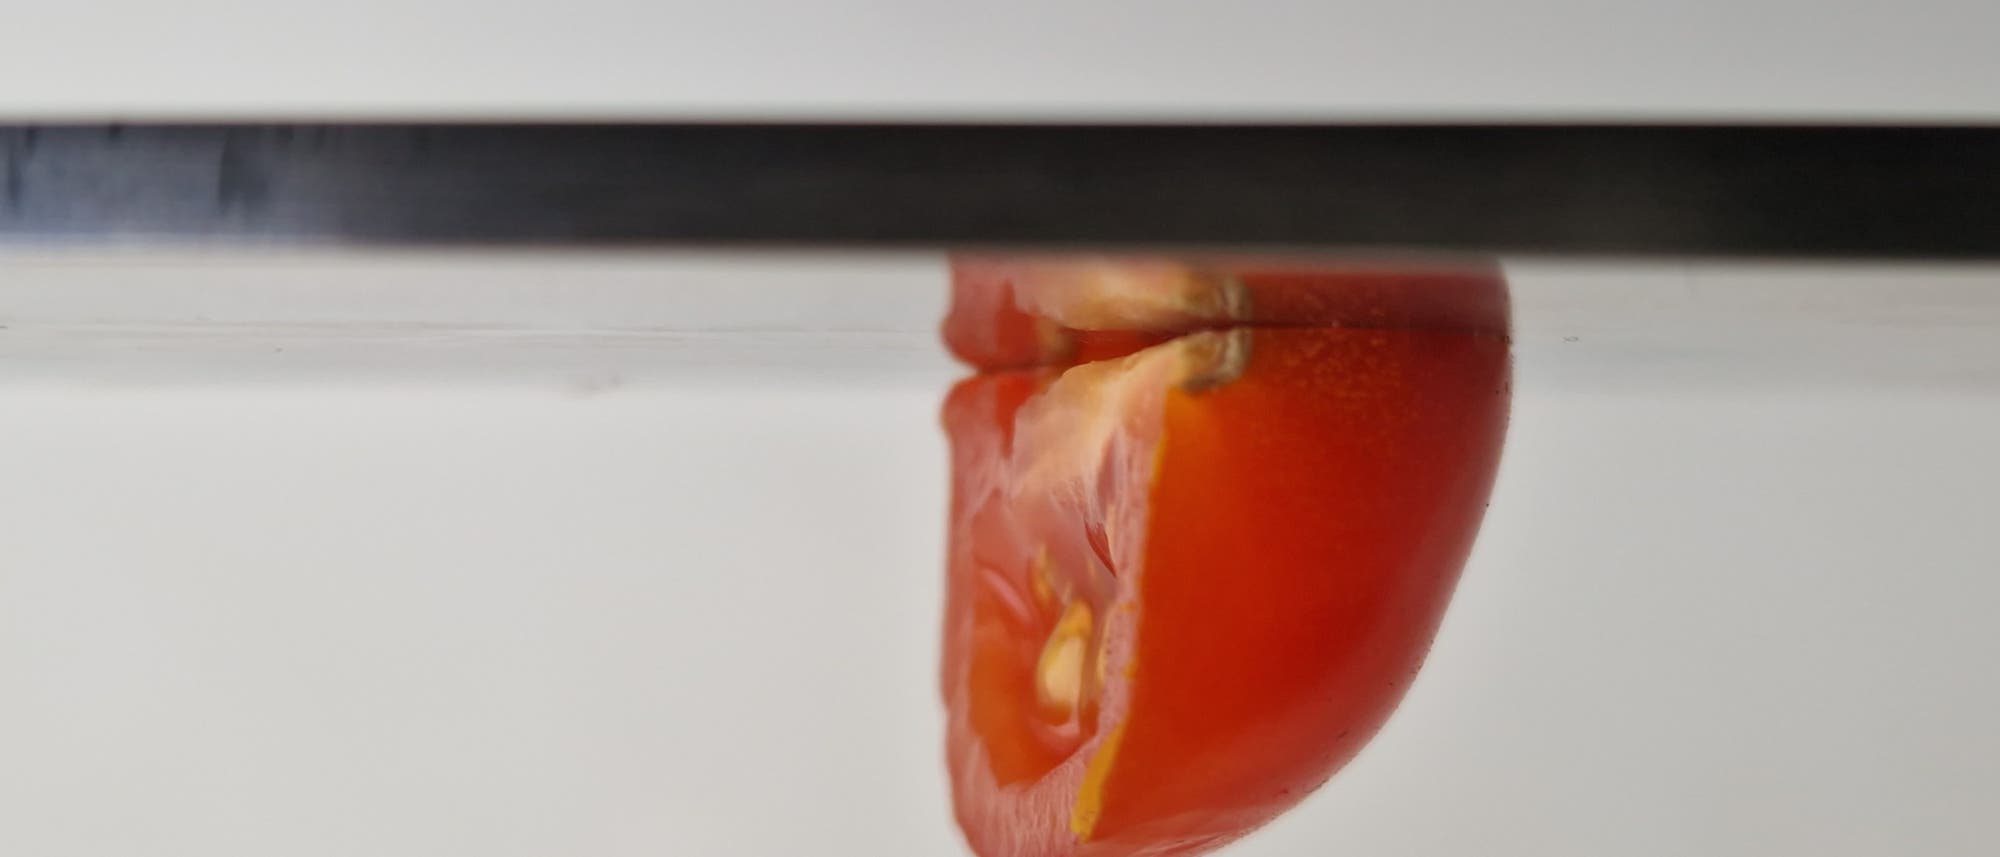 Eine Tomate hängt Kopfüber an einem Stück Metall.